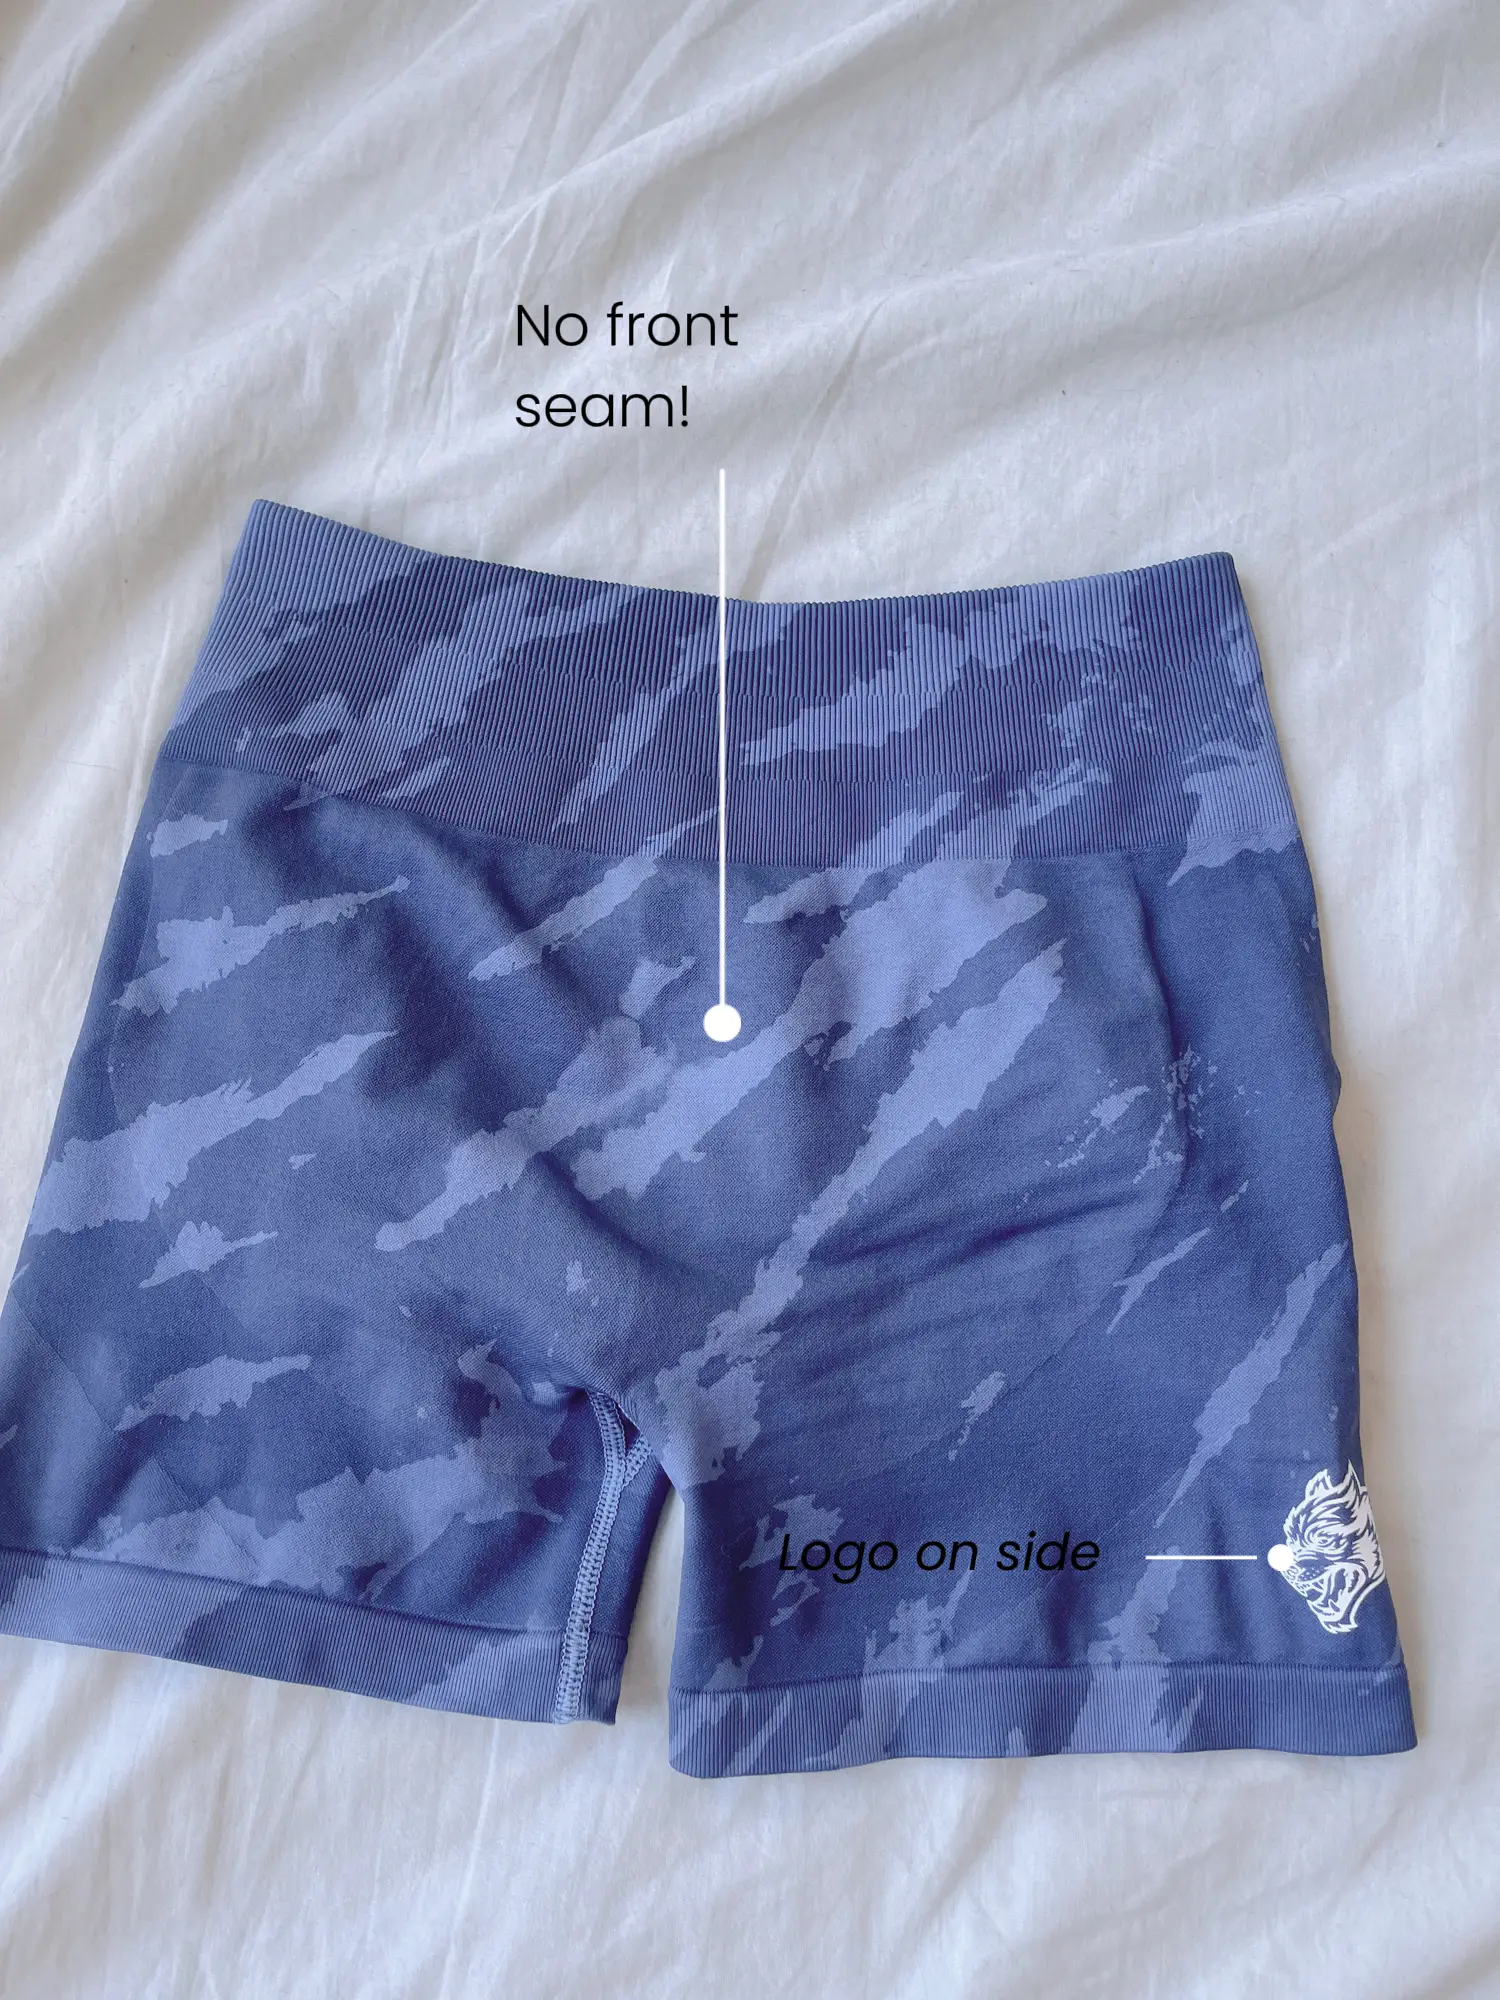 AYBL light blue shorts Super soft nice material not - Depop